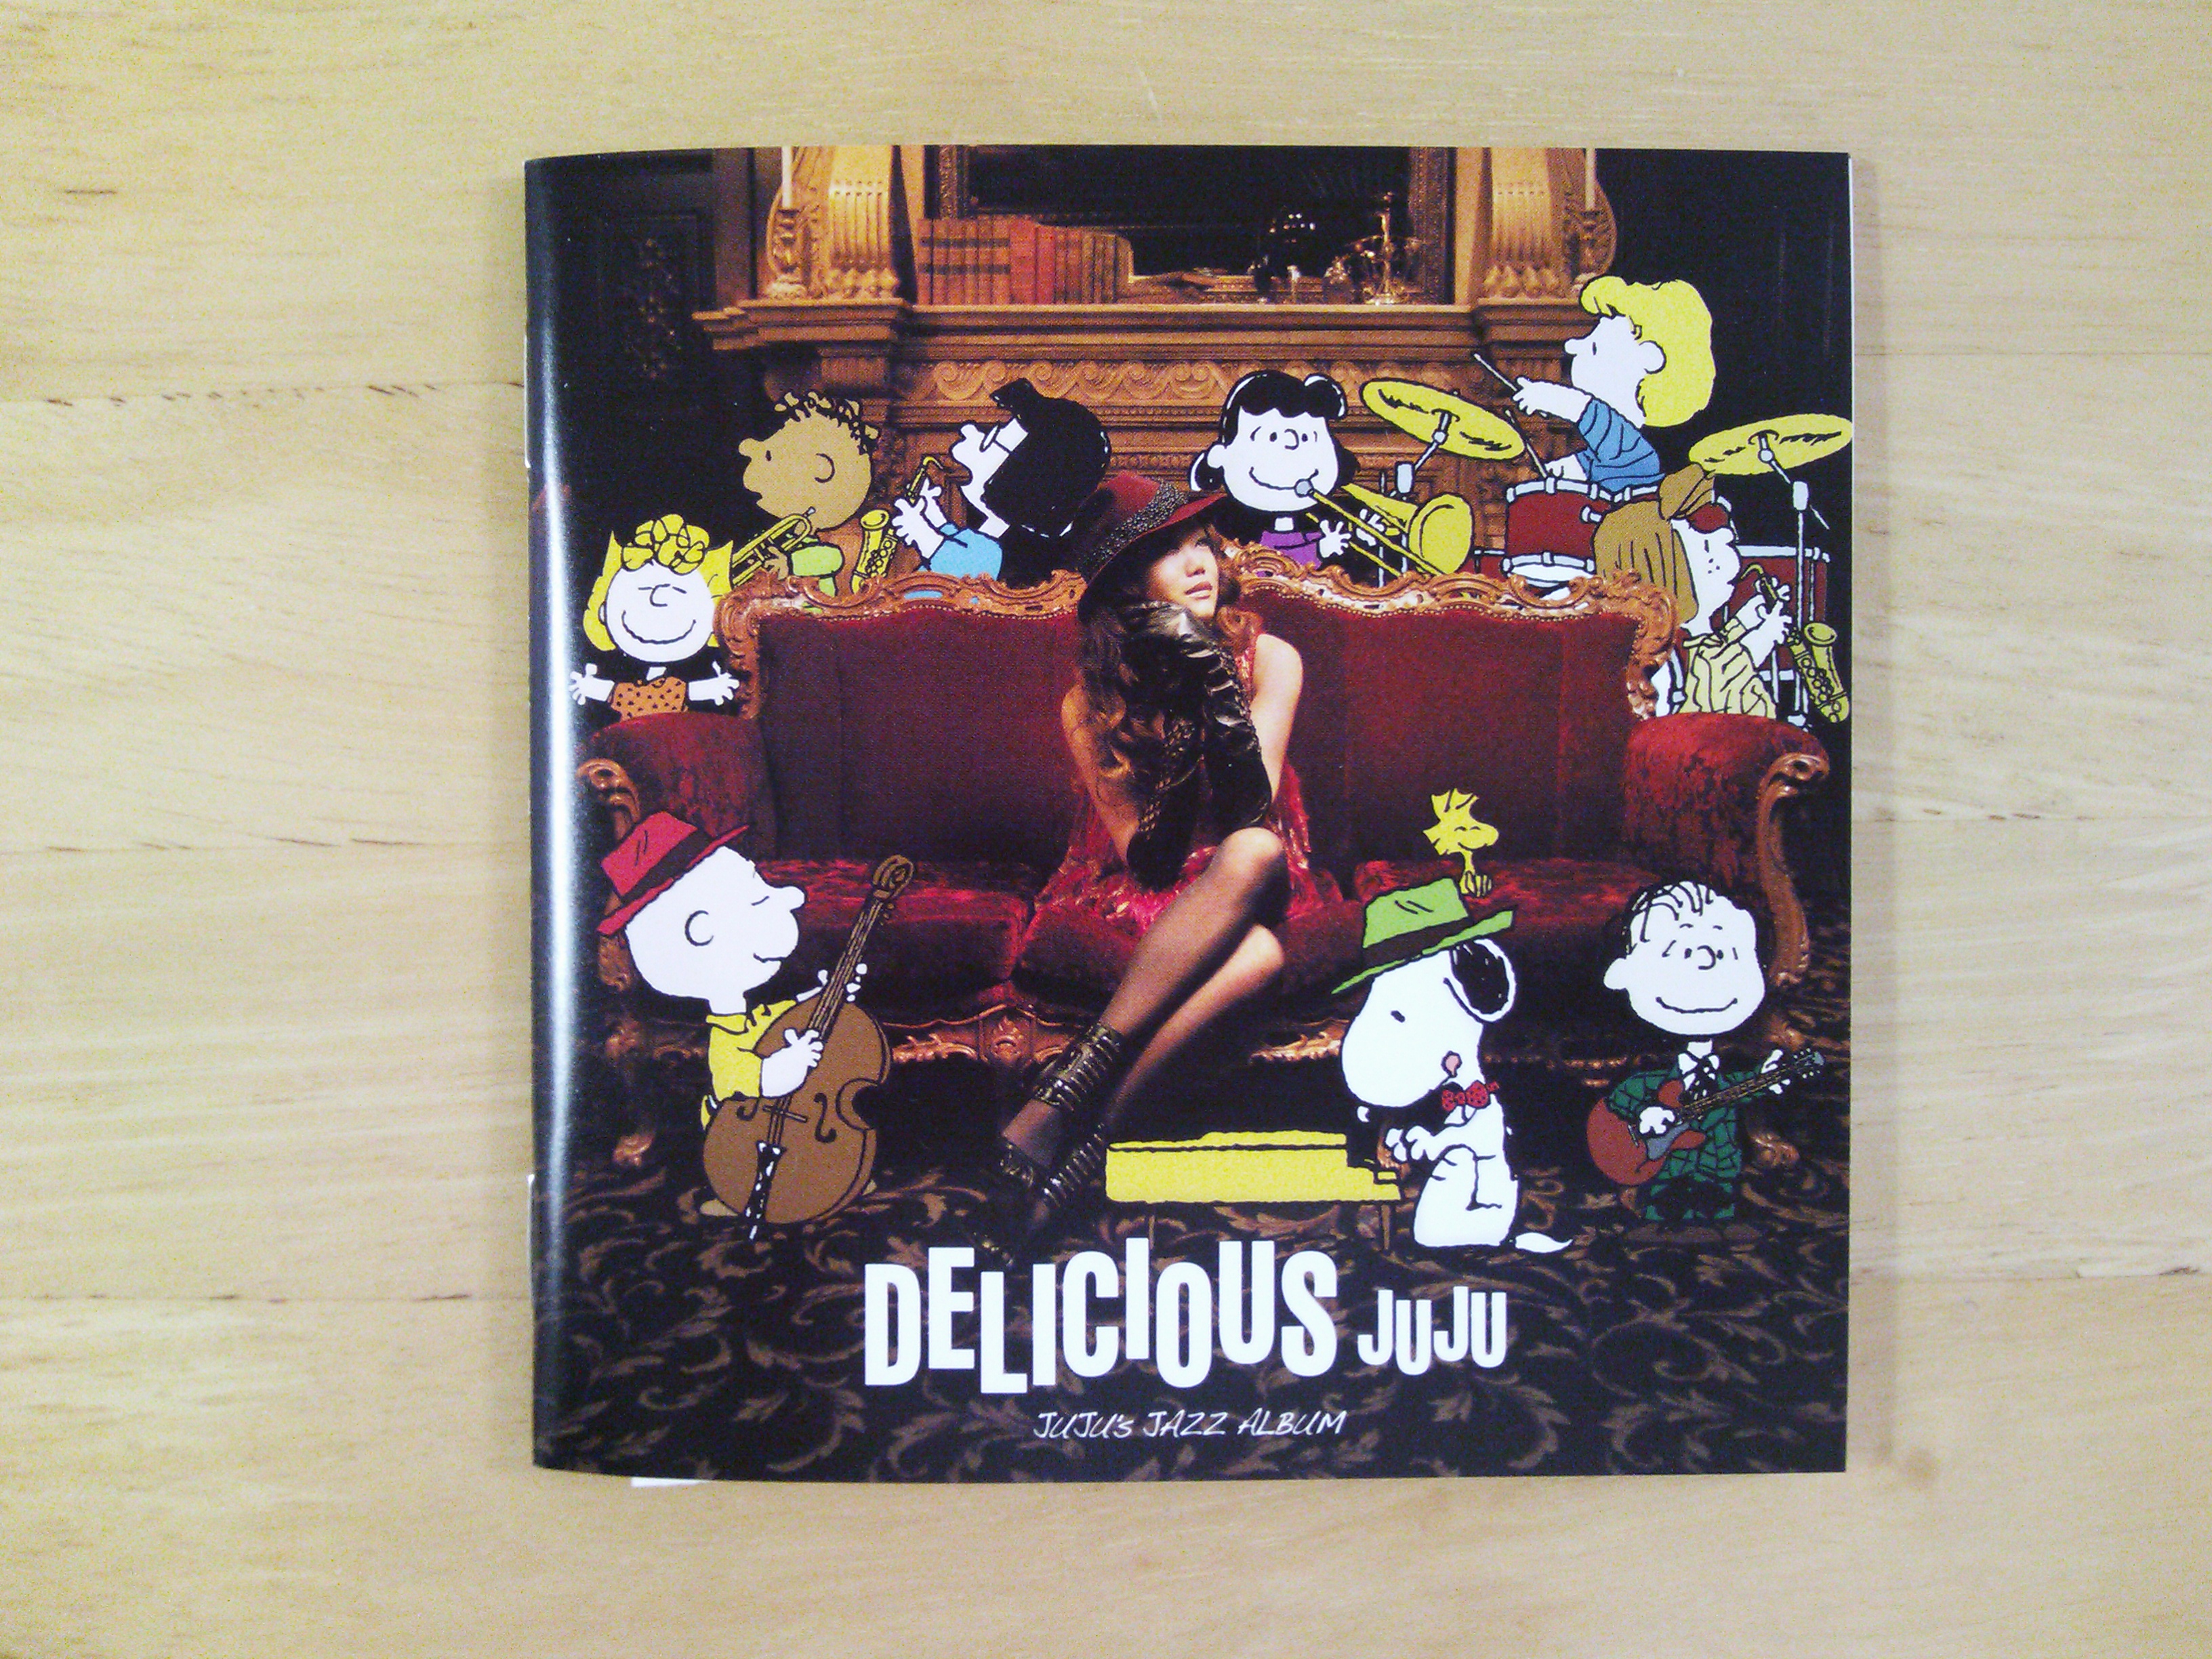 スヌーピーとjujuのコラボアルバム Delicious のスヌーピー部分を大公開 スヌーピー大好き女子が集めたスヌーピー最新情報お届けするよ